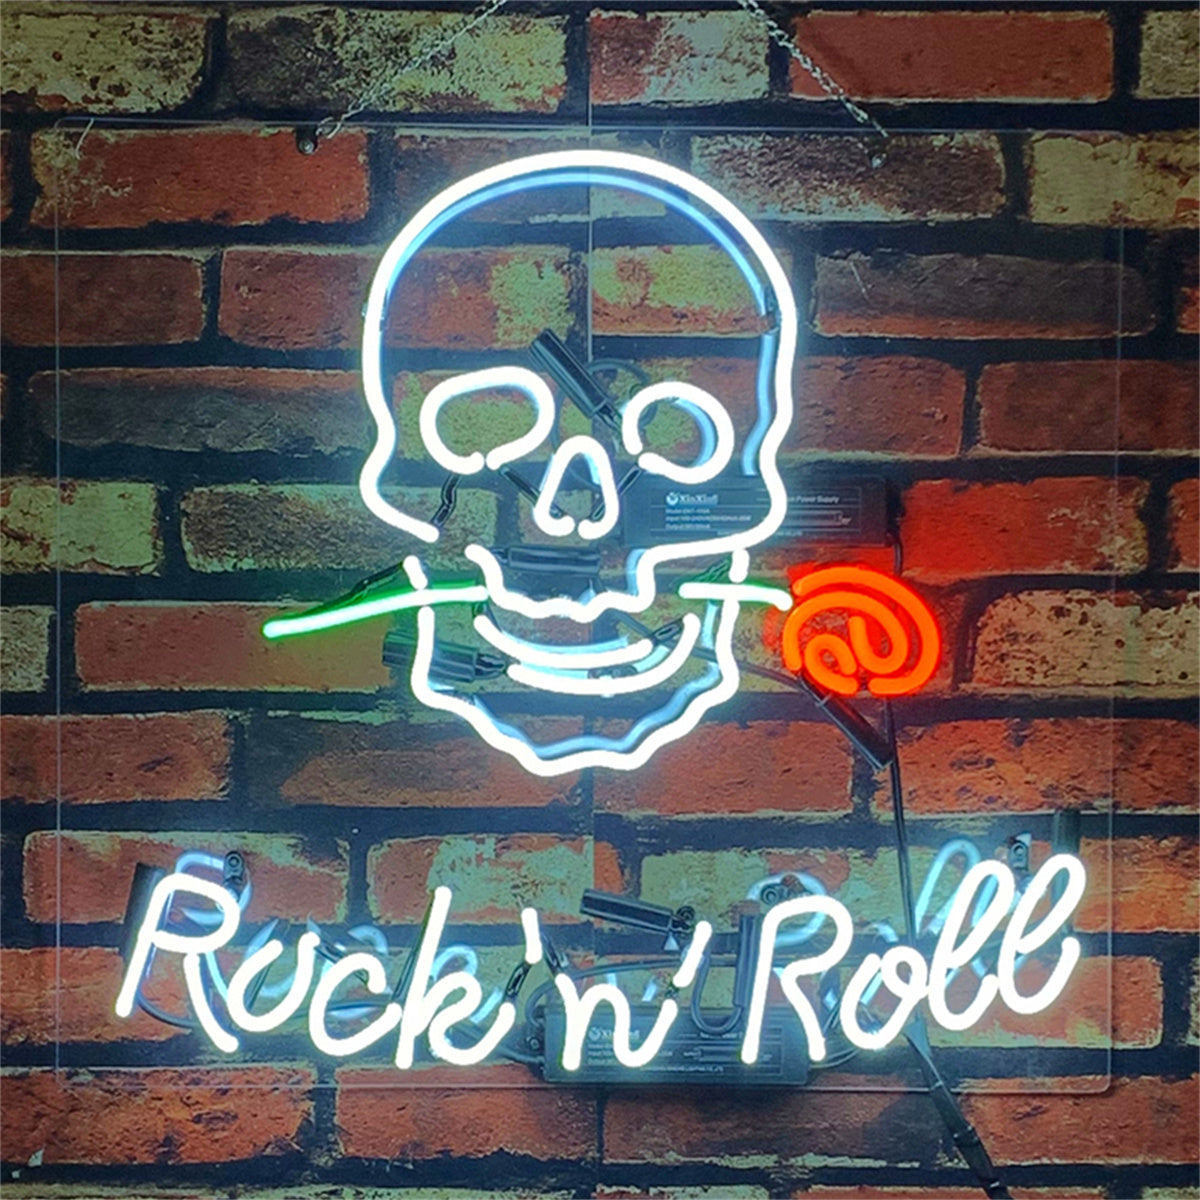 Rock n Roll Rose Skull